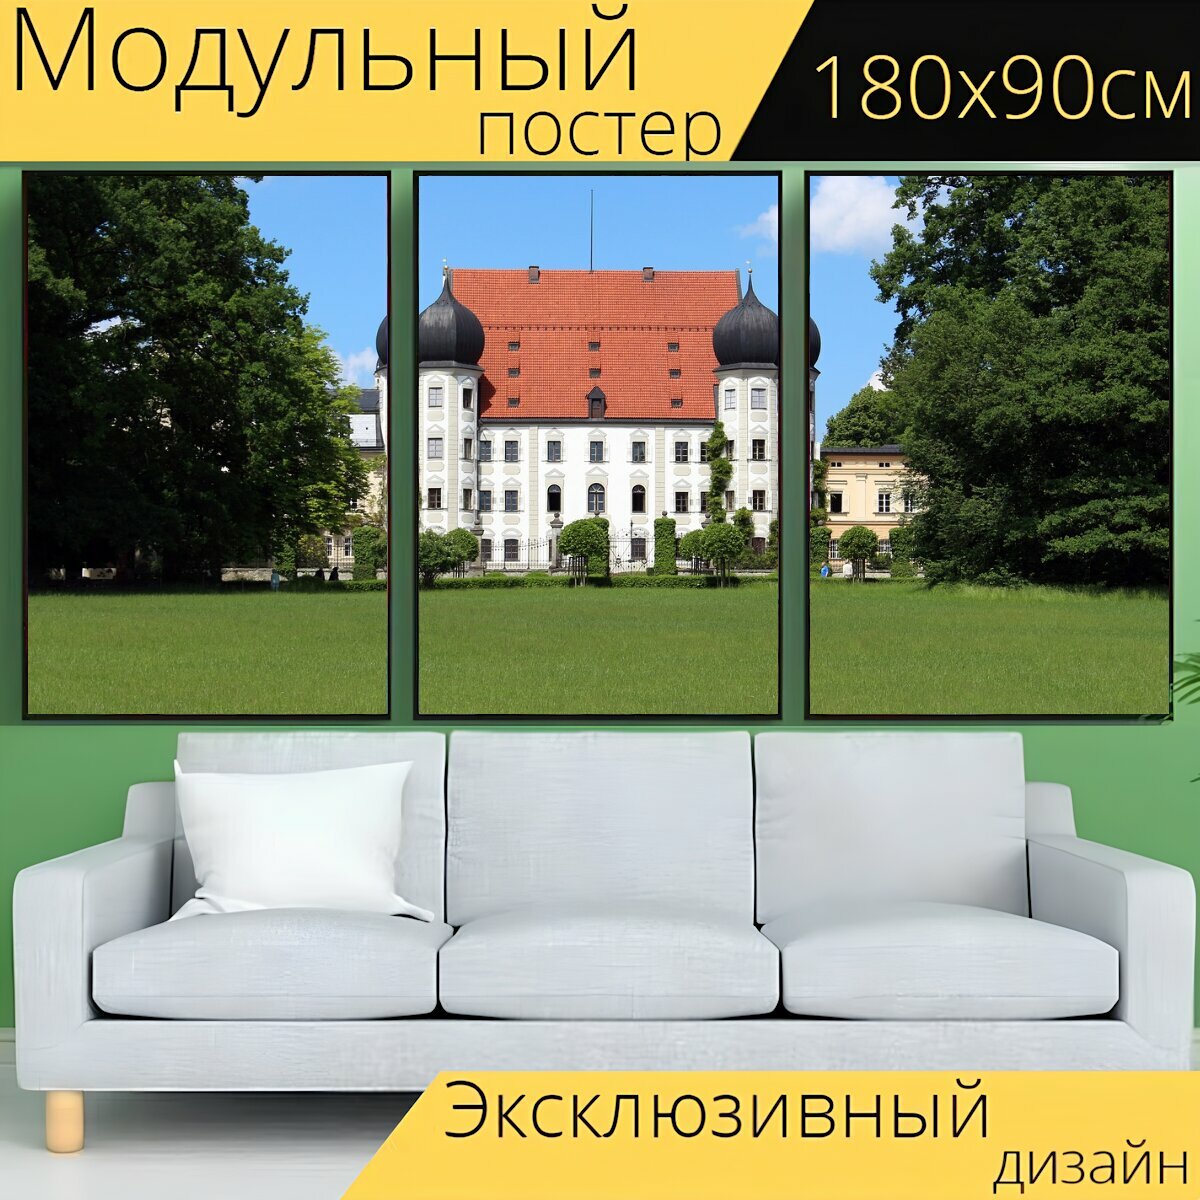 Модульный постер "Замок, старый, старый замок" 180 x 90 см. для интерьера